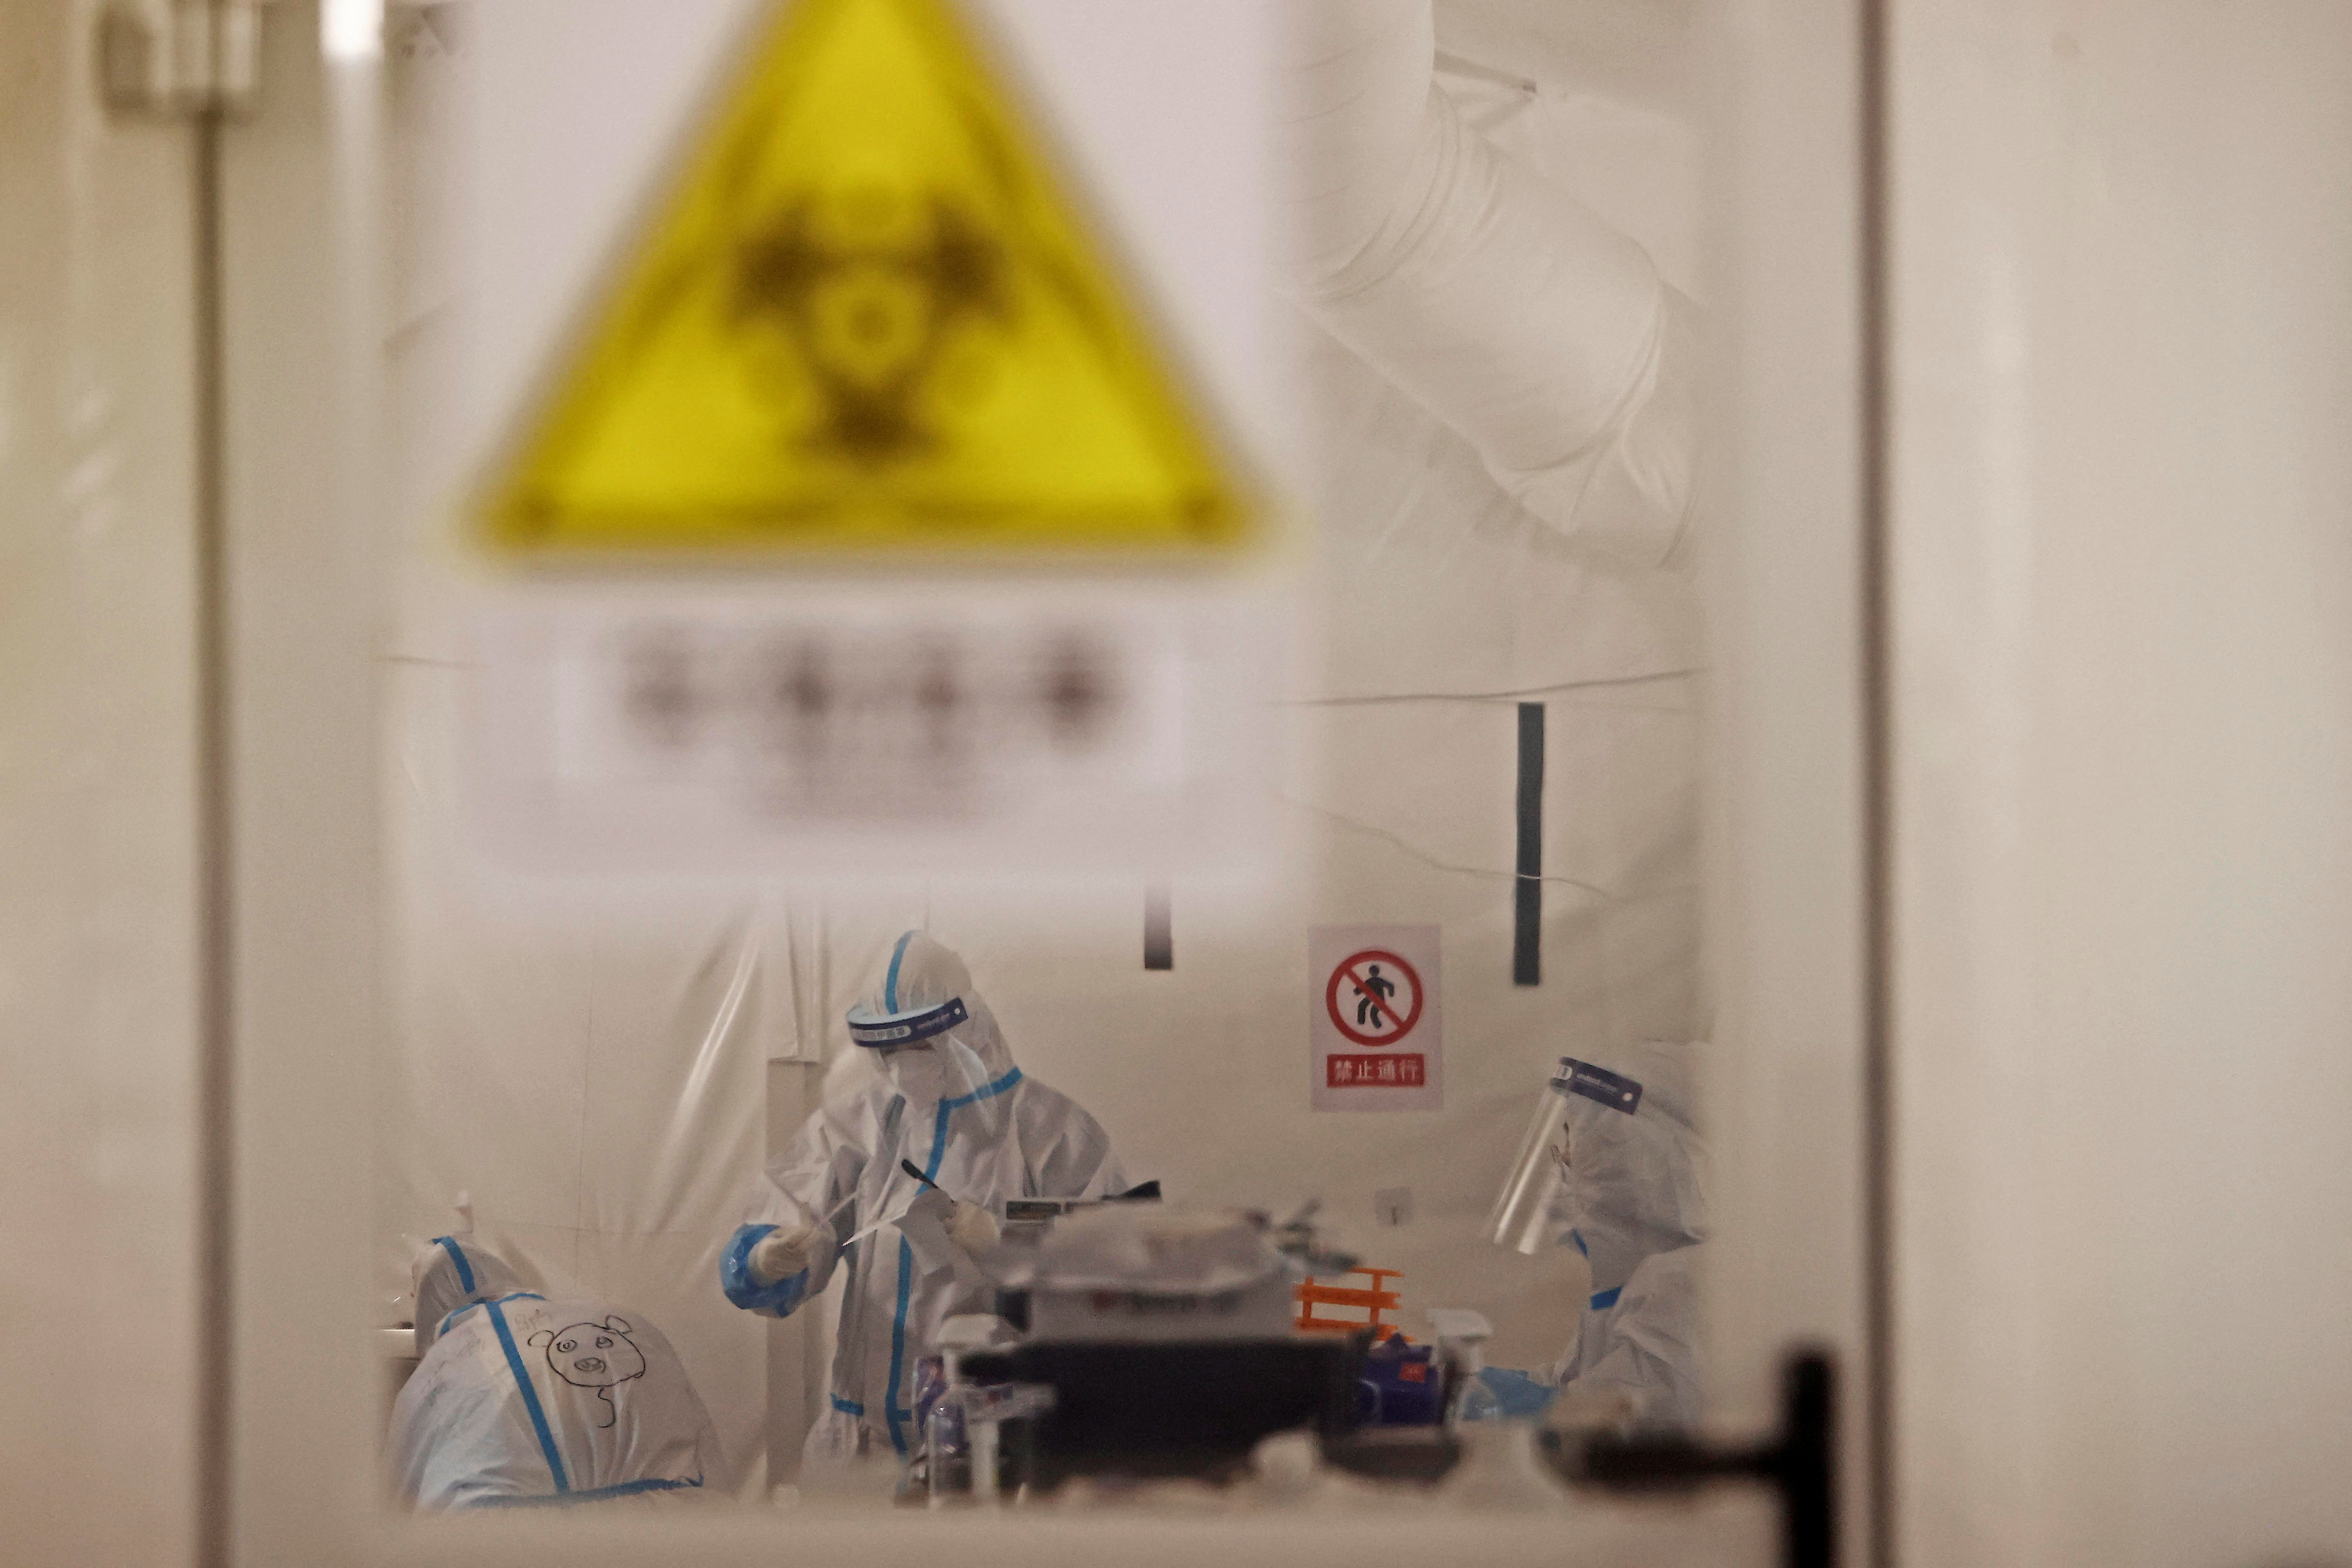 Trabajadores con trajes protectores trabajan dentro de un laboratorio de pruebas de ácido nucleico improvisado, luego del brote de la enfermedad por coronavirus (COVID-19) en Shanghái, China. cnsphoto vía REUTERS